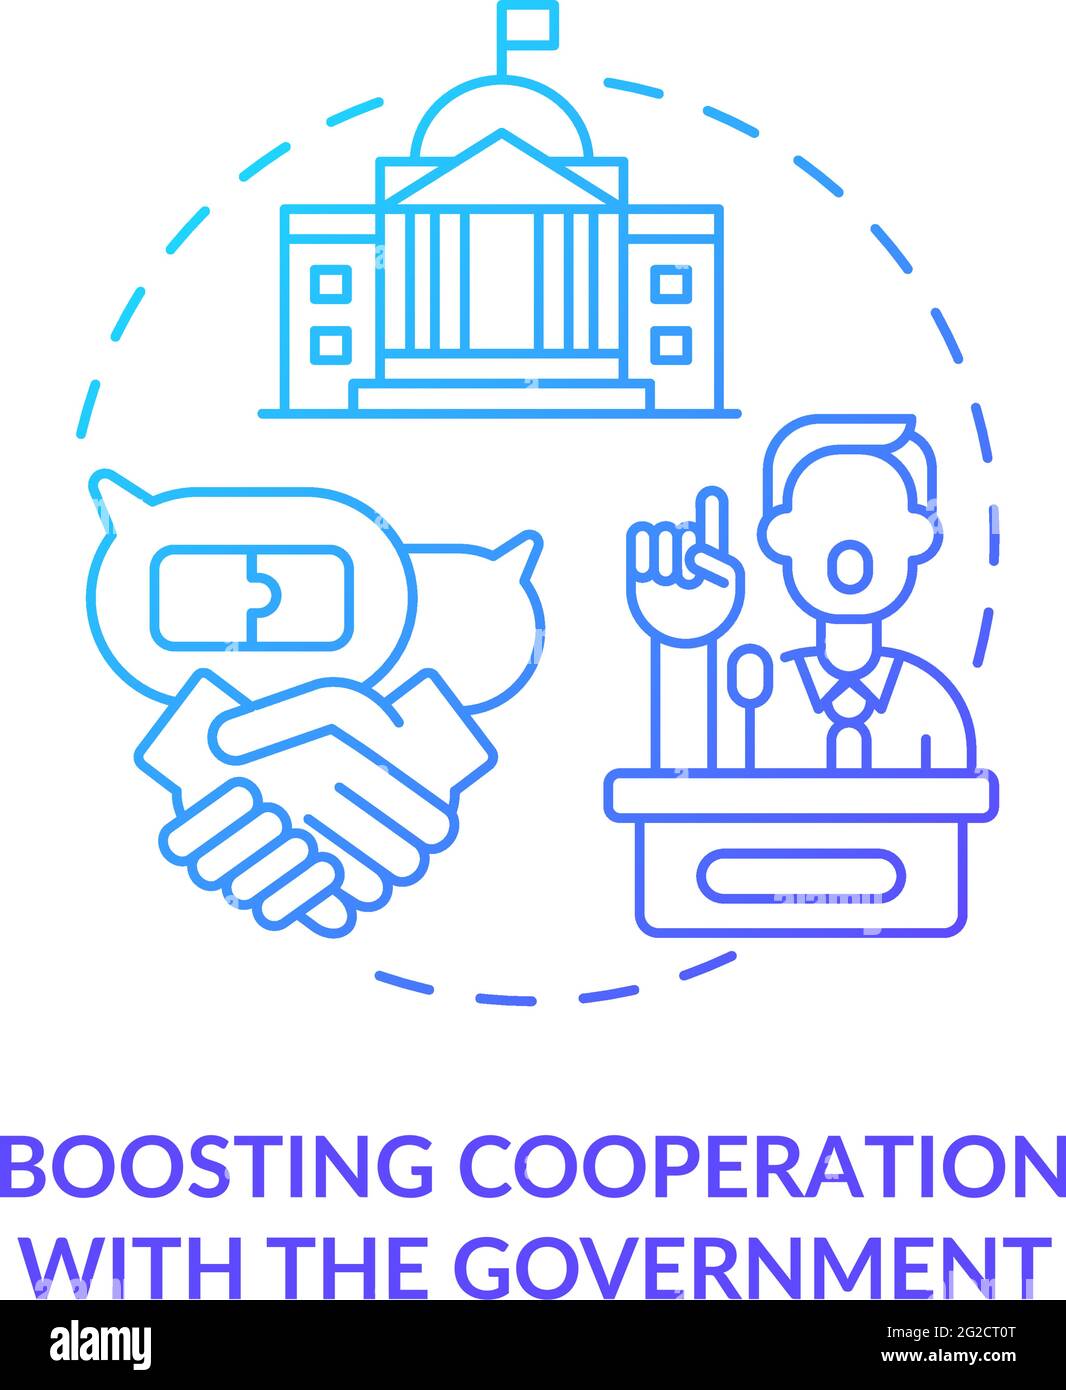 Verstärkte Zusammenarbeit mit Government Concept Icon Stock Vektor